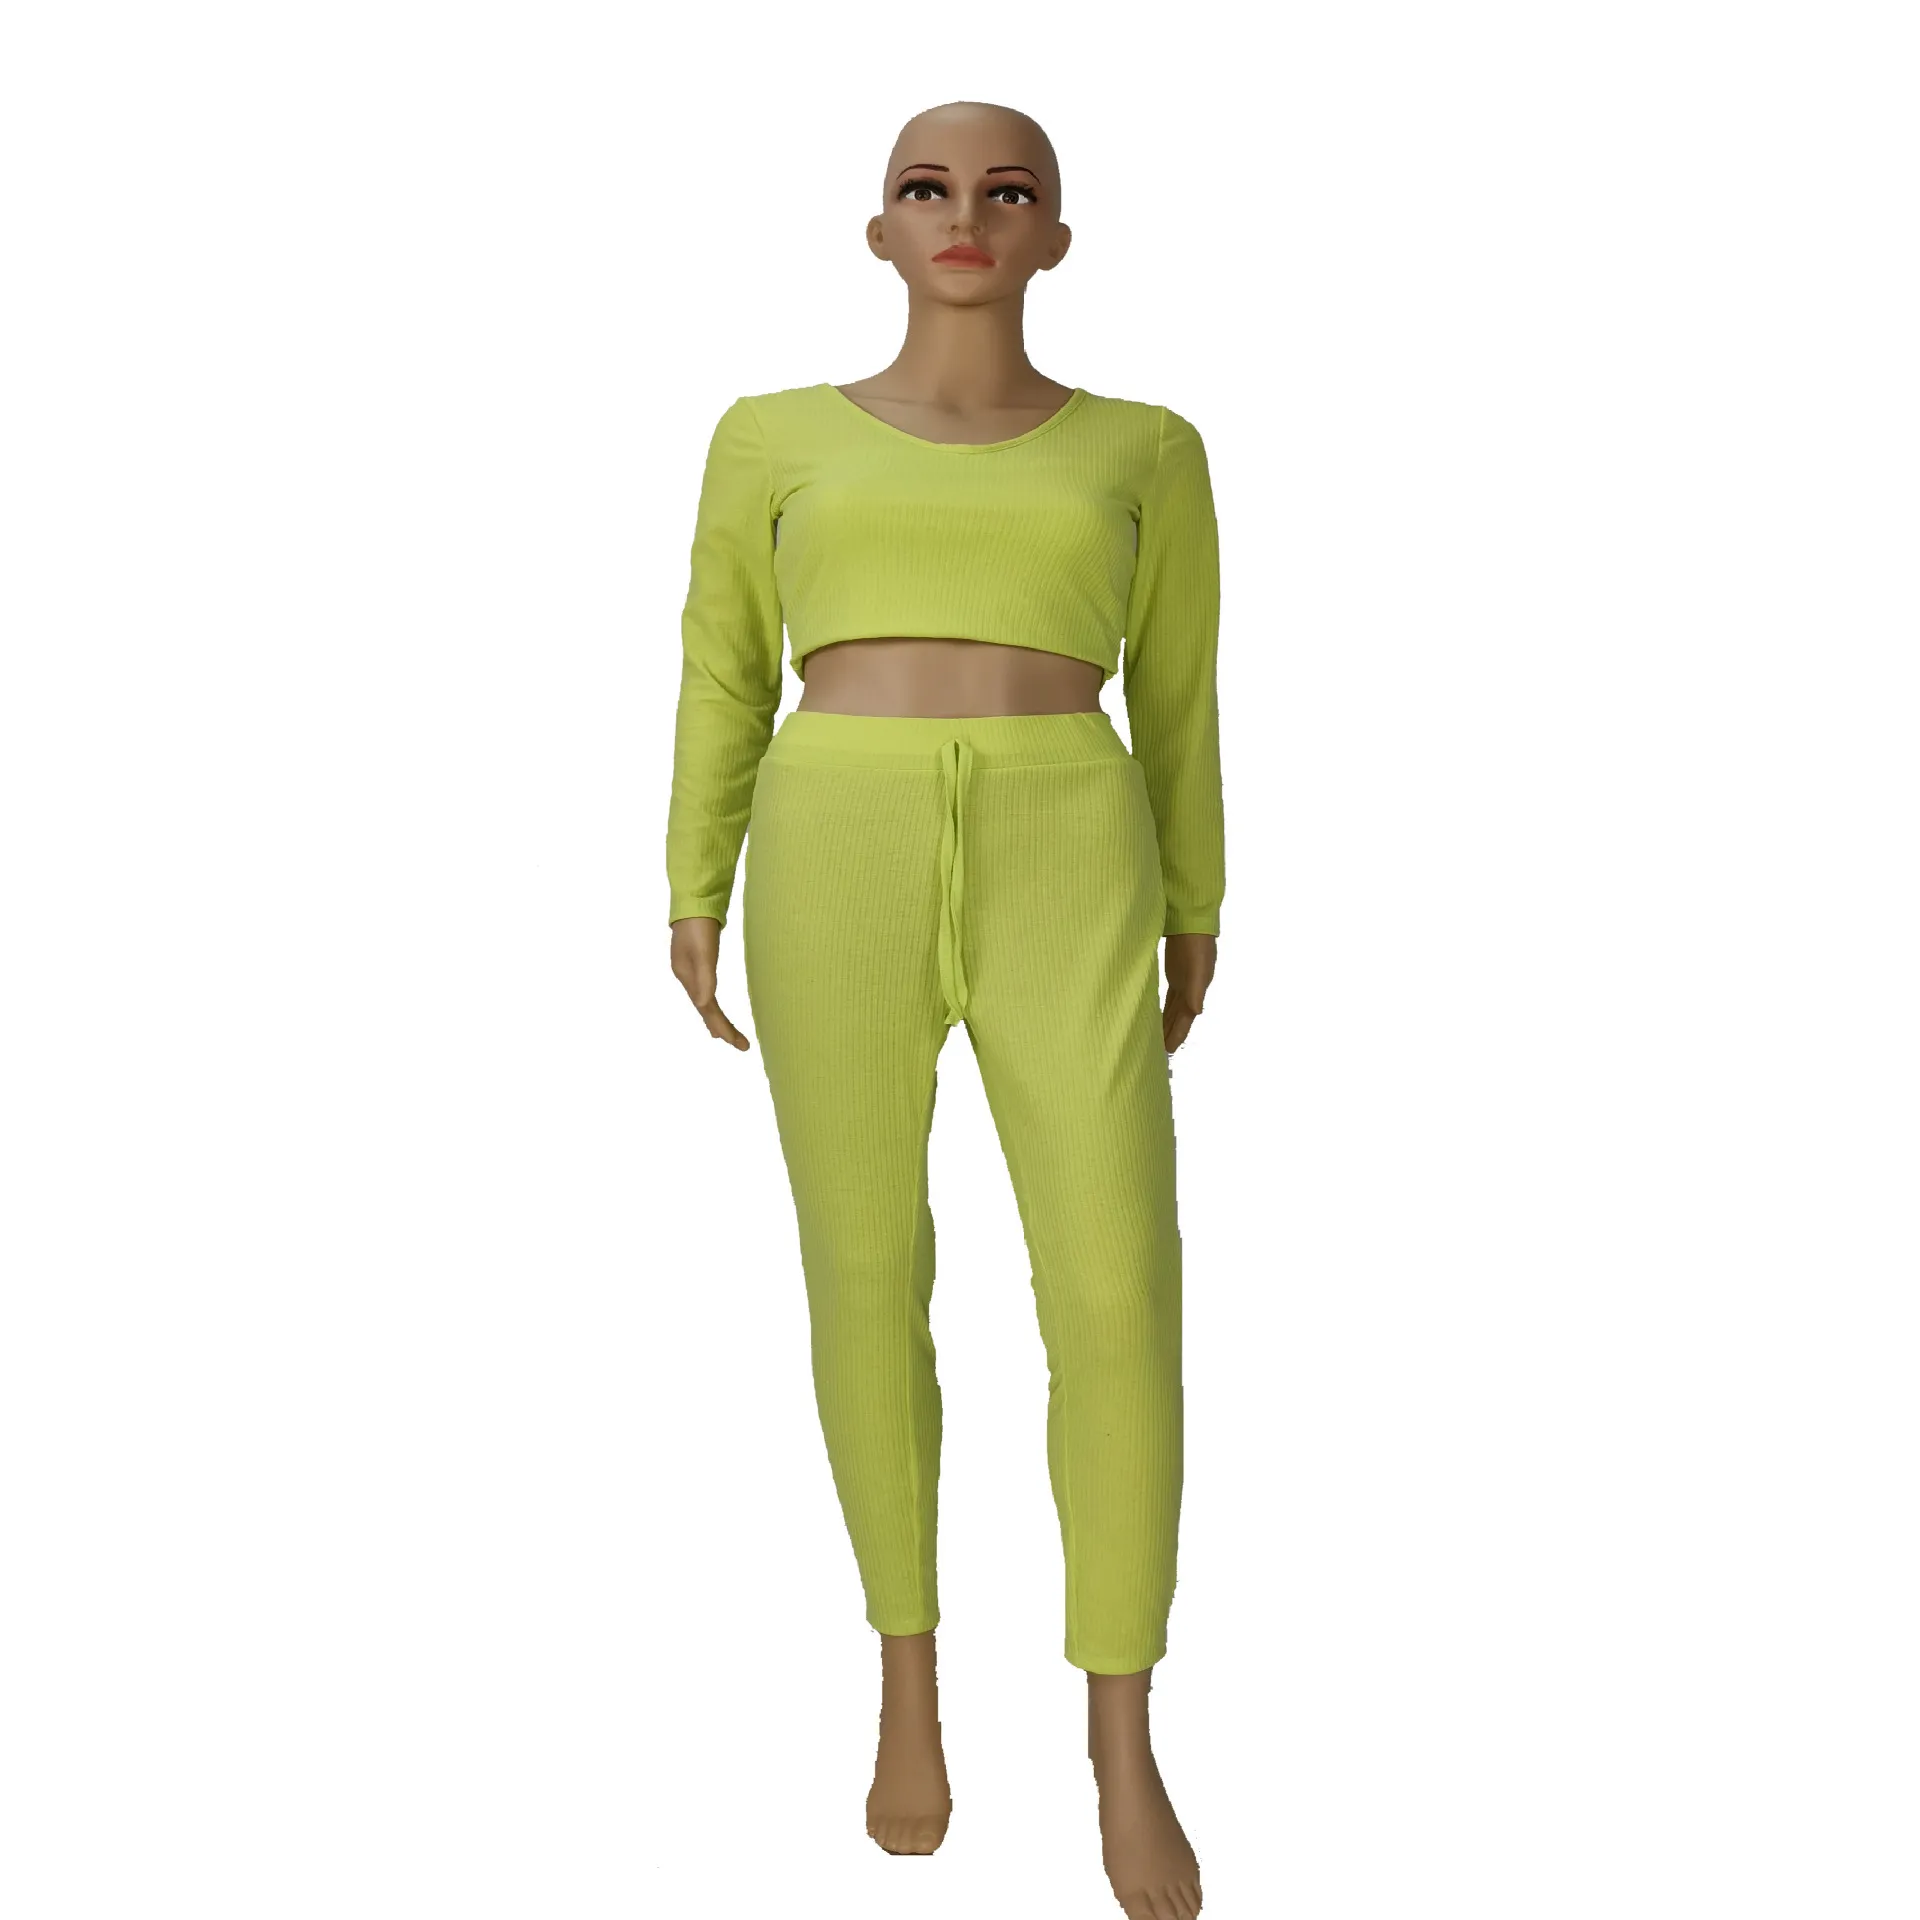 OMSJ Automne Vêtements Femmes Tricoté Fluorescent Vert À Manches Longues Crop Top + Pantalon Deux Pièces Survêtement Dames Occasionnels Oufits Mujer 210517